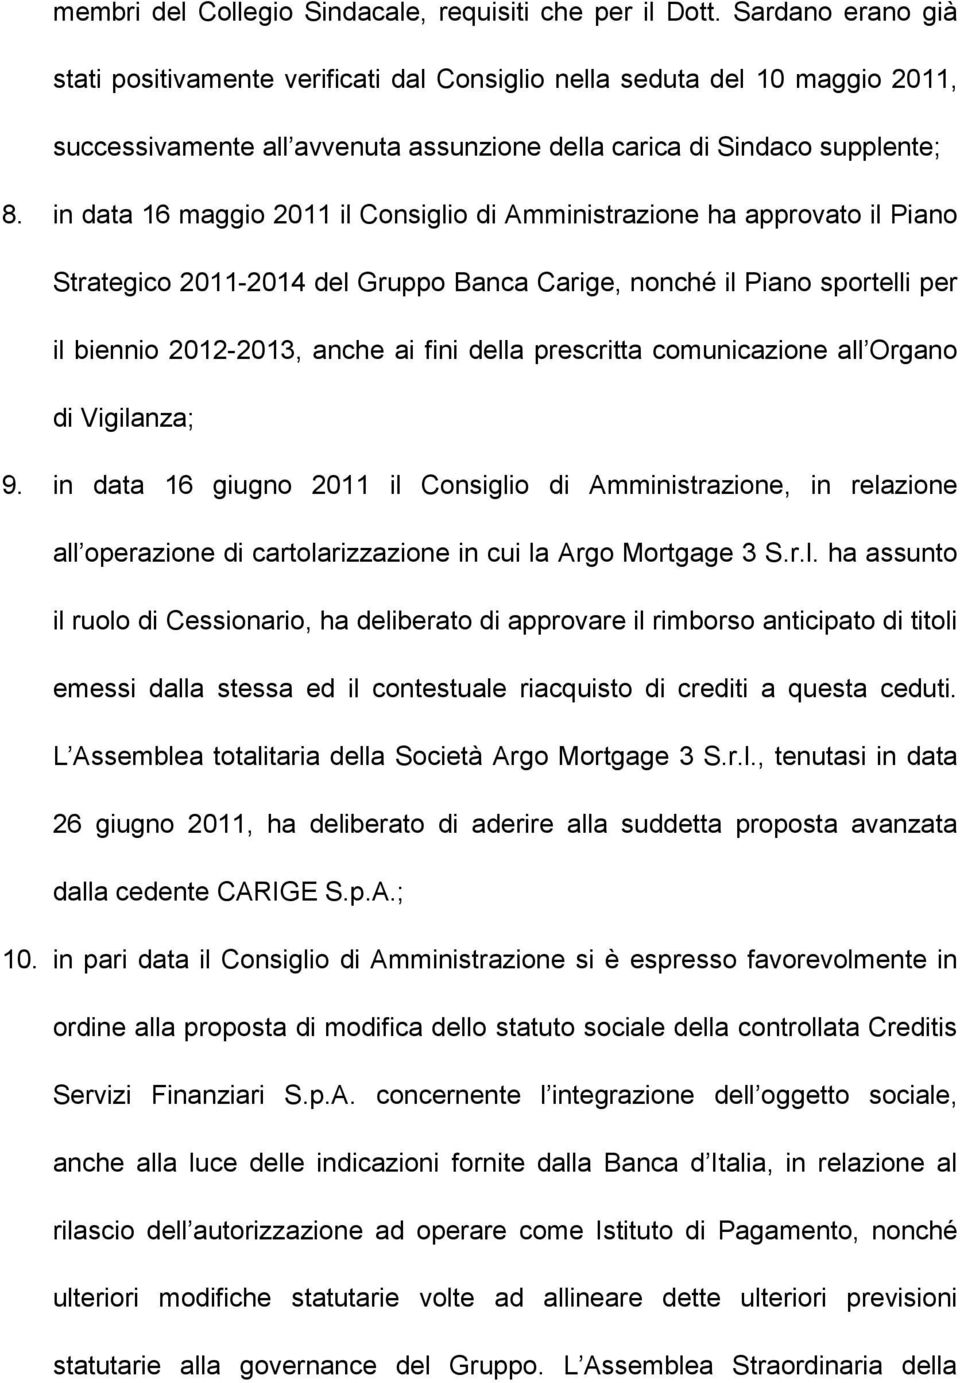 in data 16 maggio 2011 il Consiglio di Amministrazione ha approvato il Piano Strategico 2011-2014 del Gruppo Banca Carige, nonché il Piano sportelli per il biennio 2012-2013, anche ai fini della